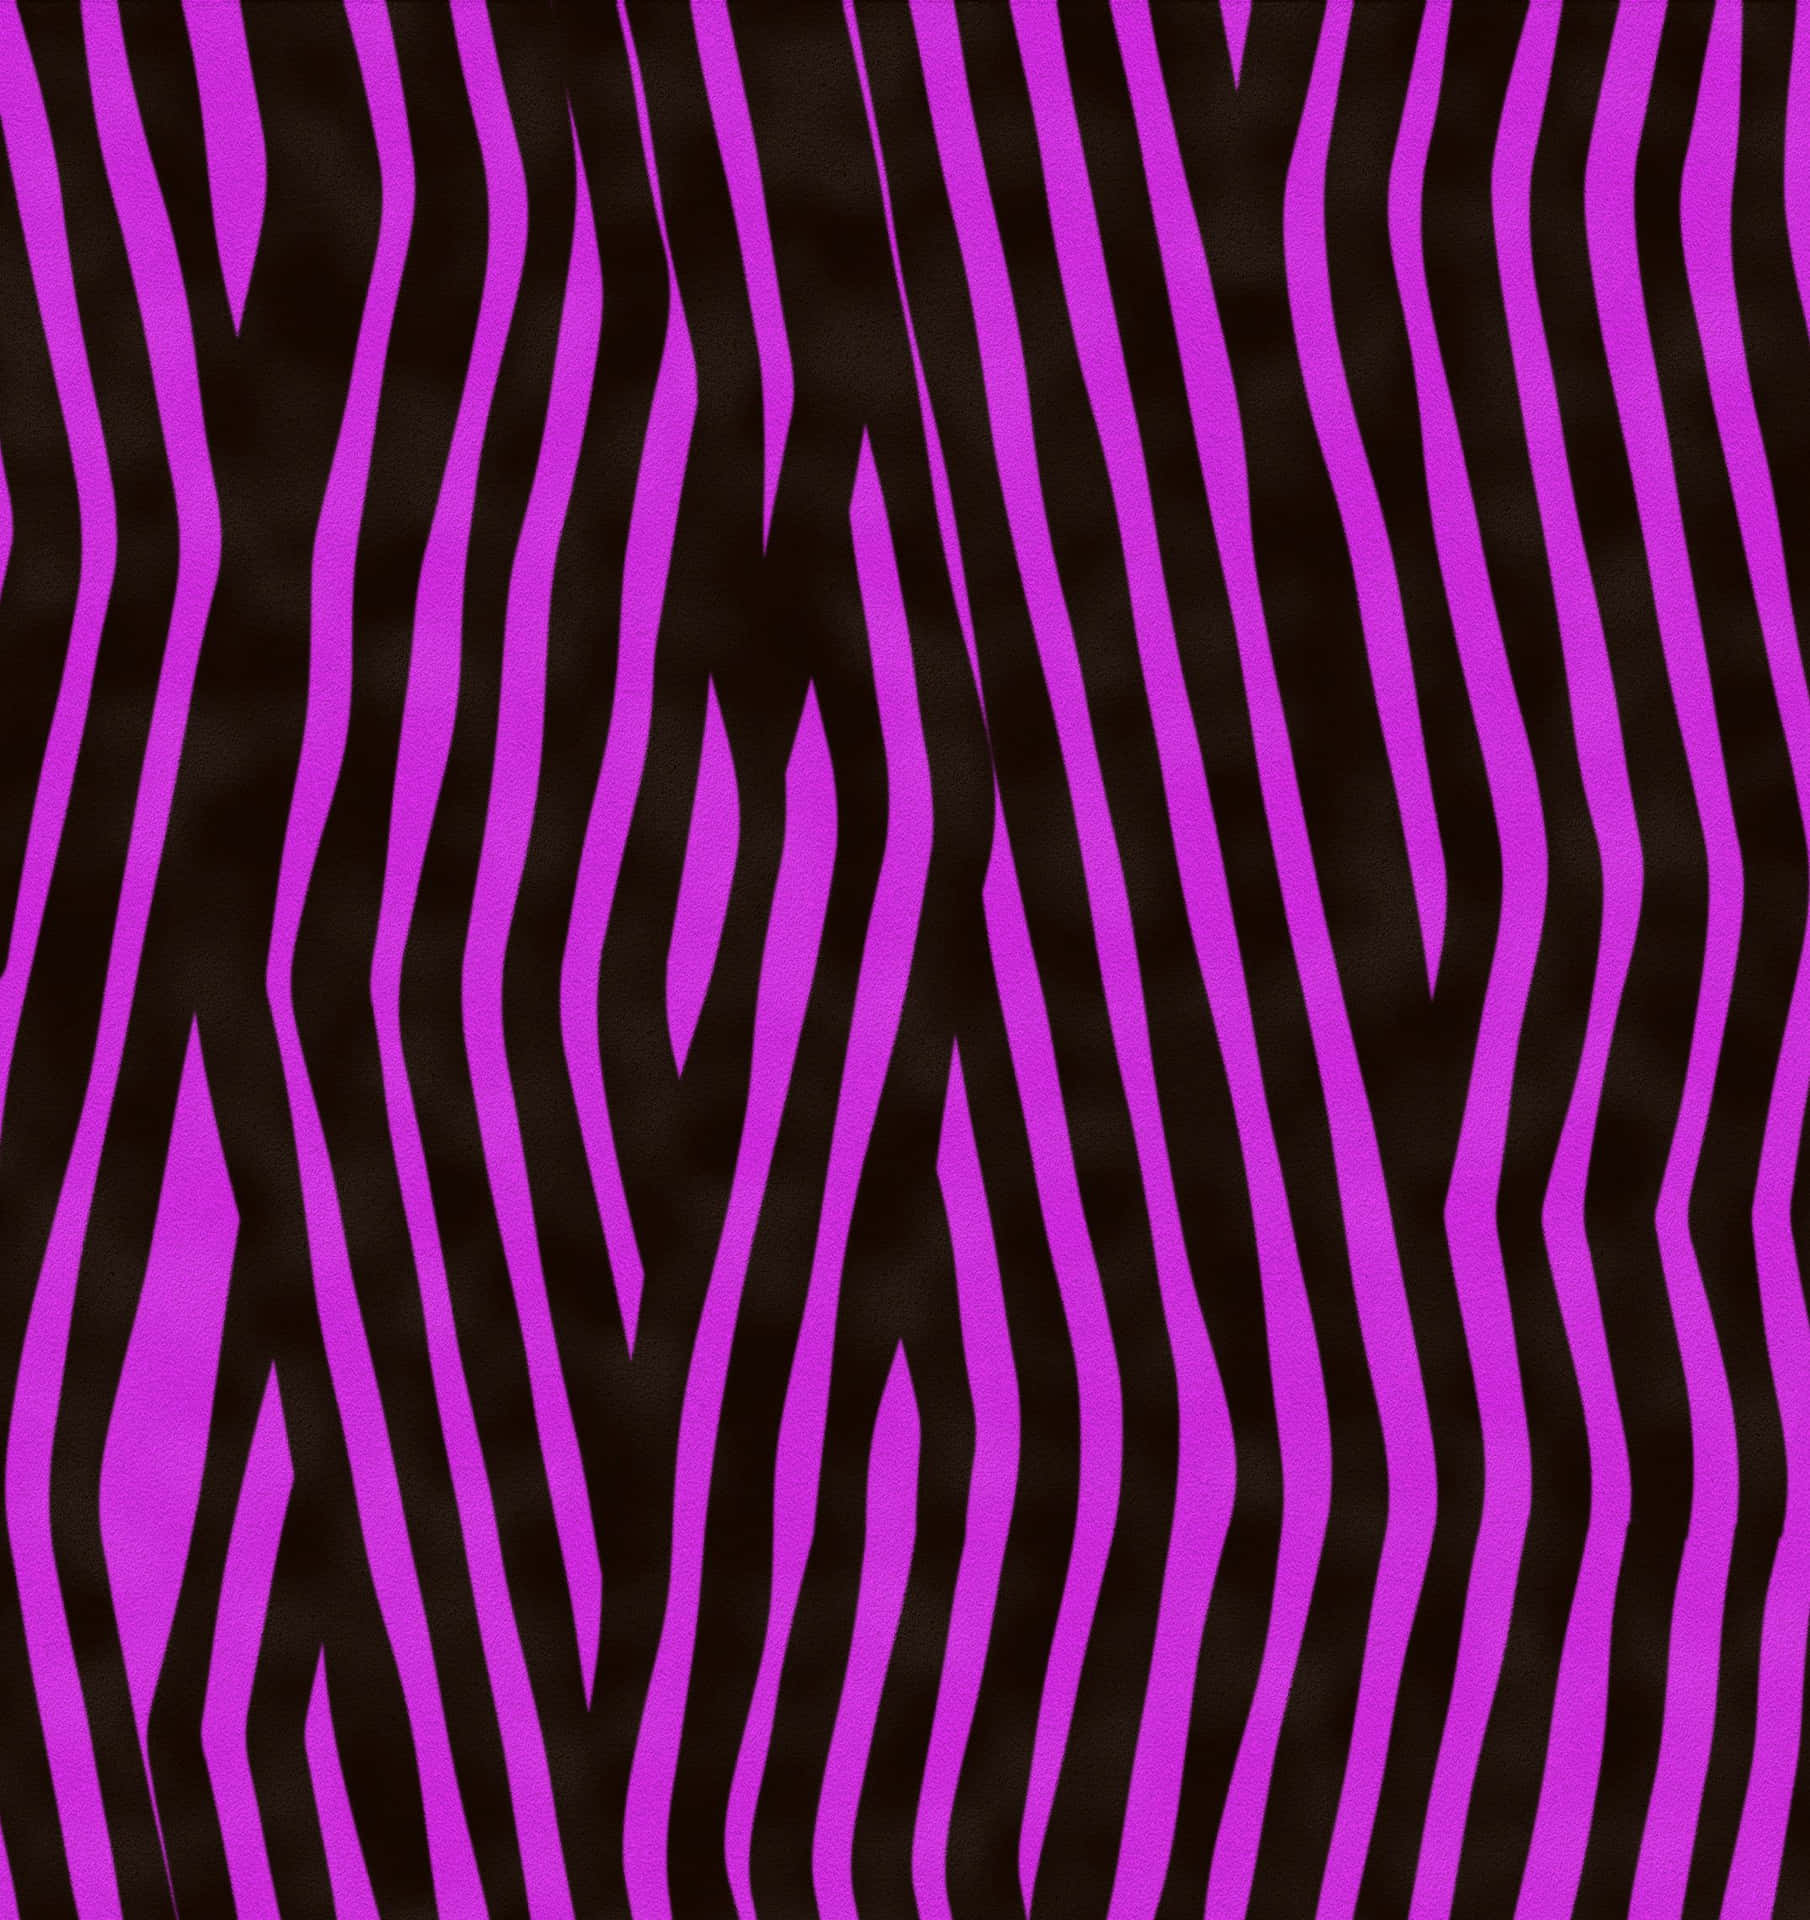 Animal Print Violet Zebra Wallpaper